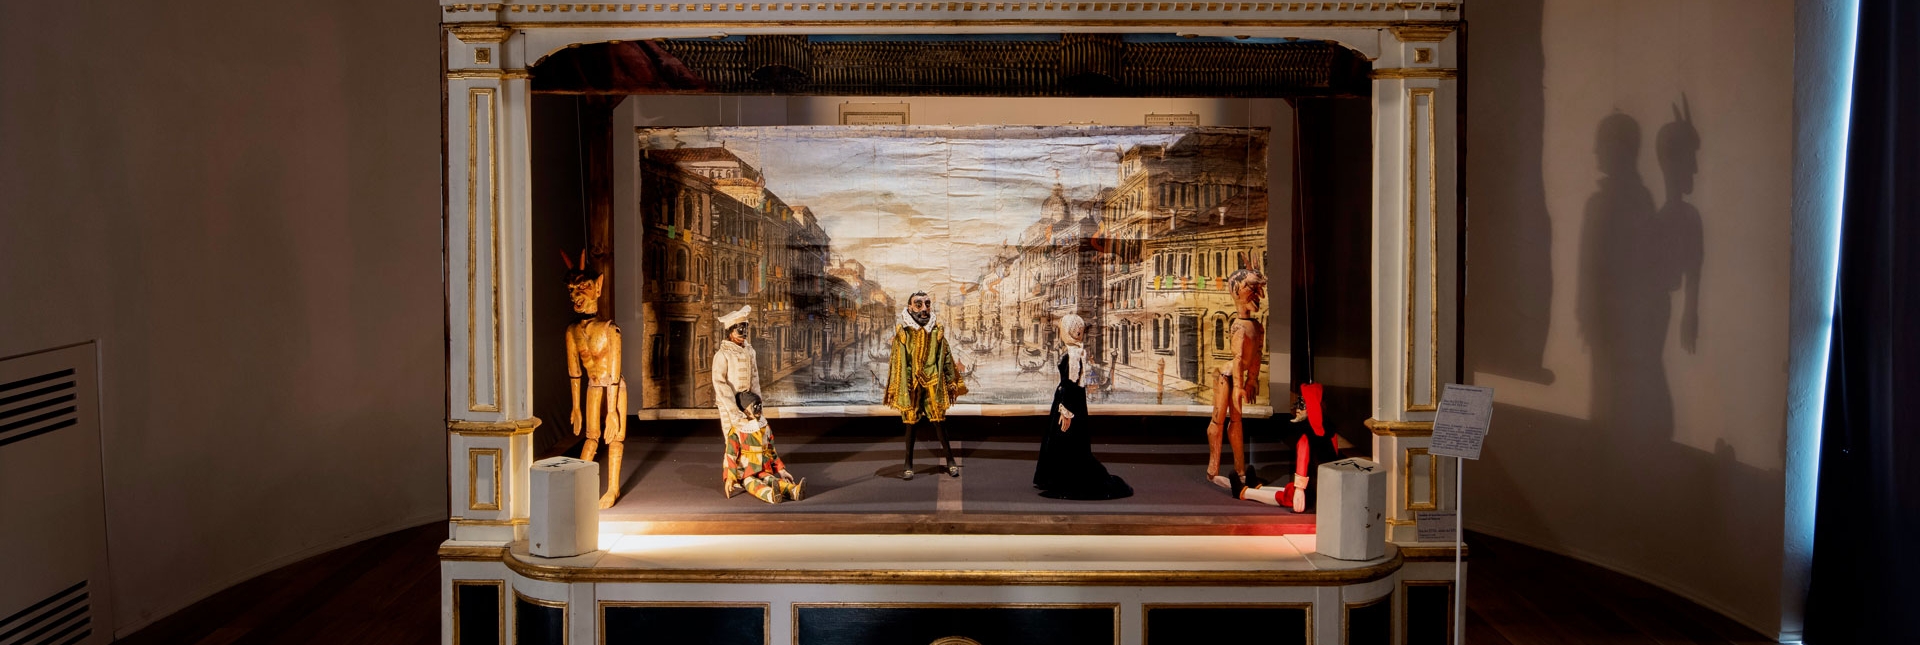 Teatrino per marionette, fine XVIII - inizio XIX sec.  legno dipinto e dorato Torino, collezione Augusto Grilli